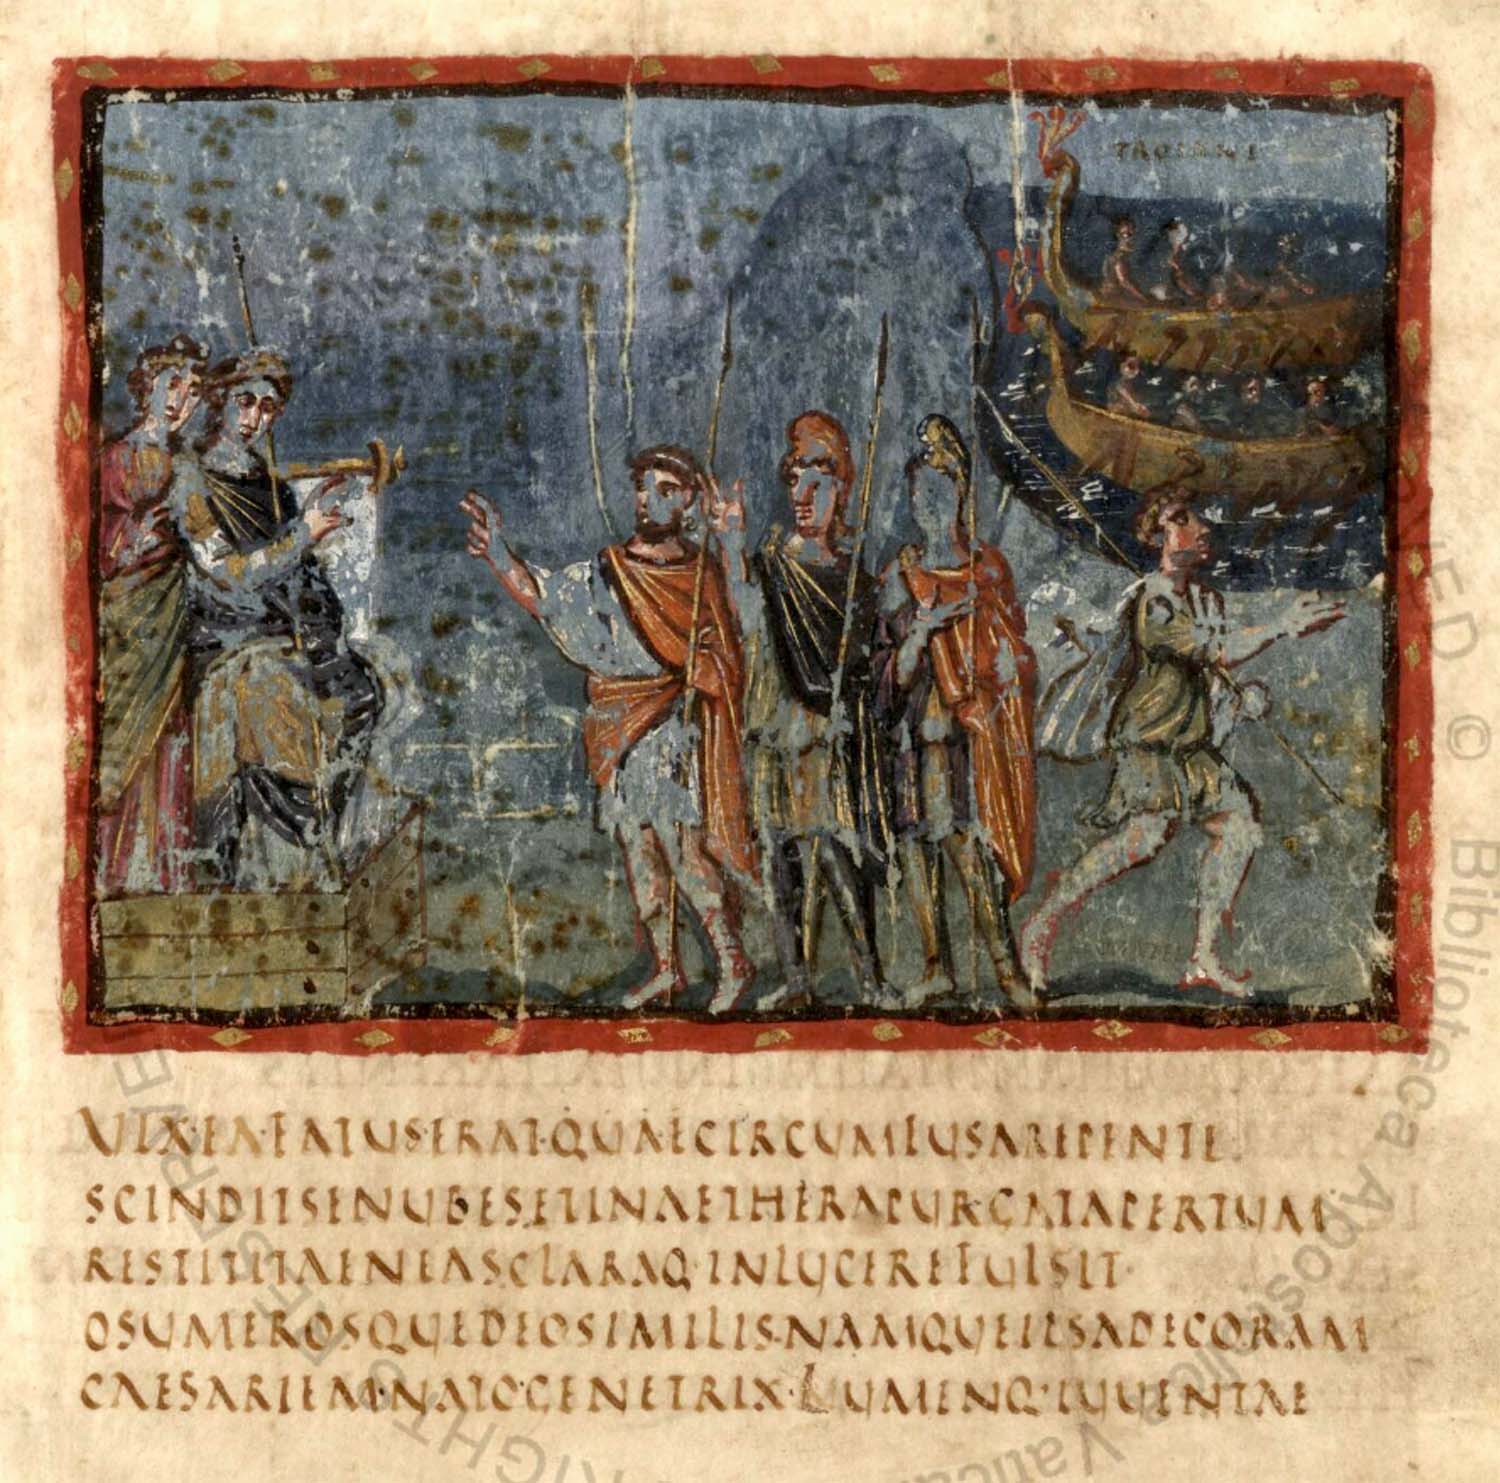 Scan of the Vatican Virgil manuscript using rustic capitals